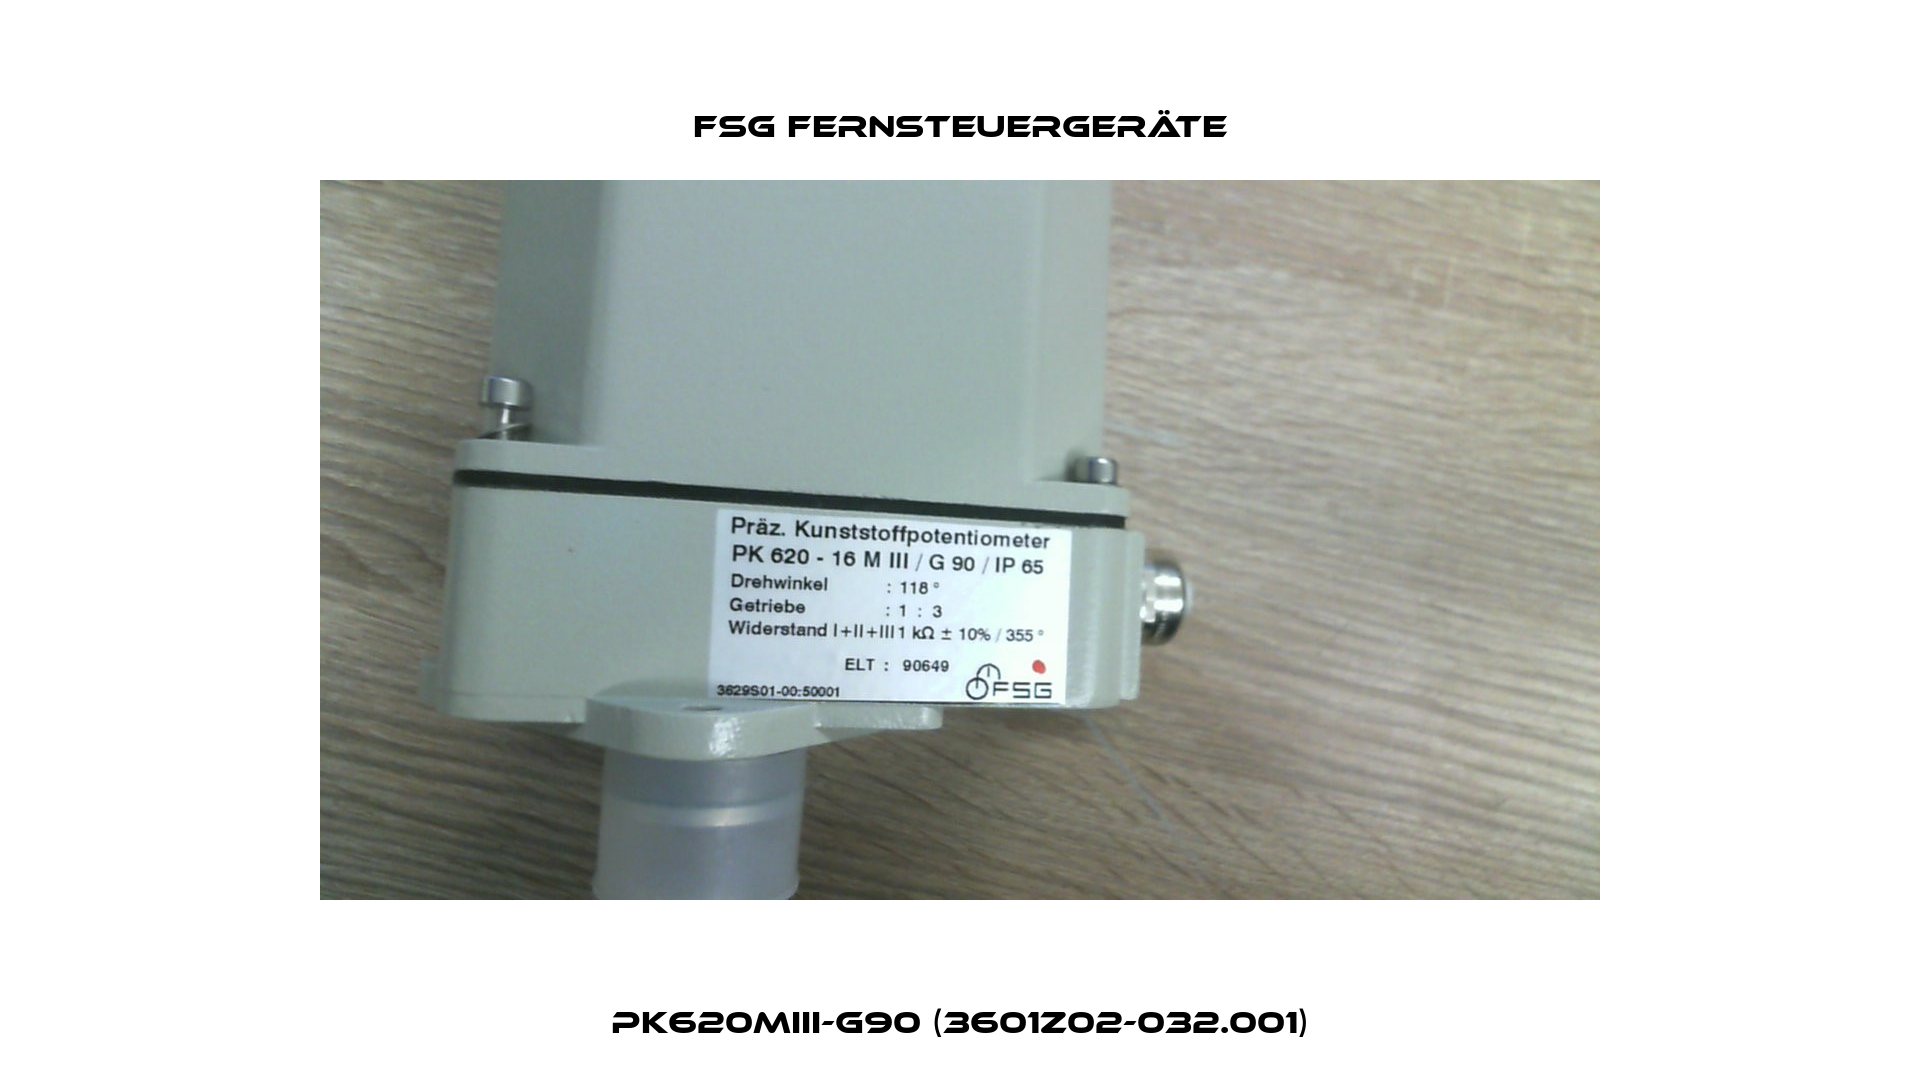 PK620MIII-G90 (3601Z02-032.001) FSG Fernsteuergeräte